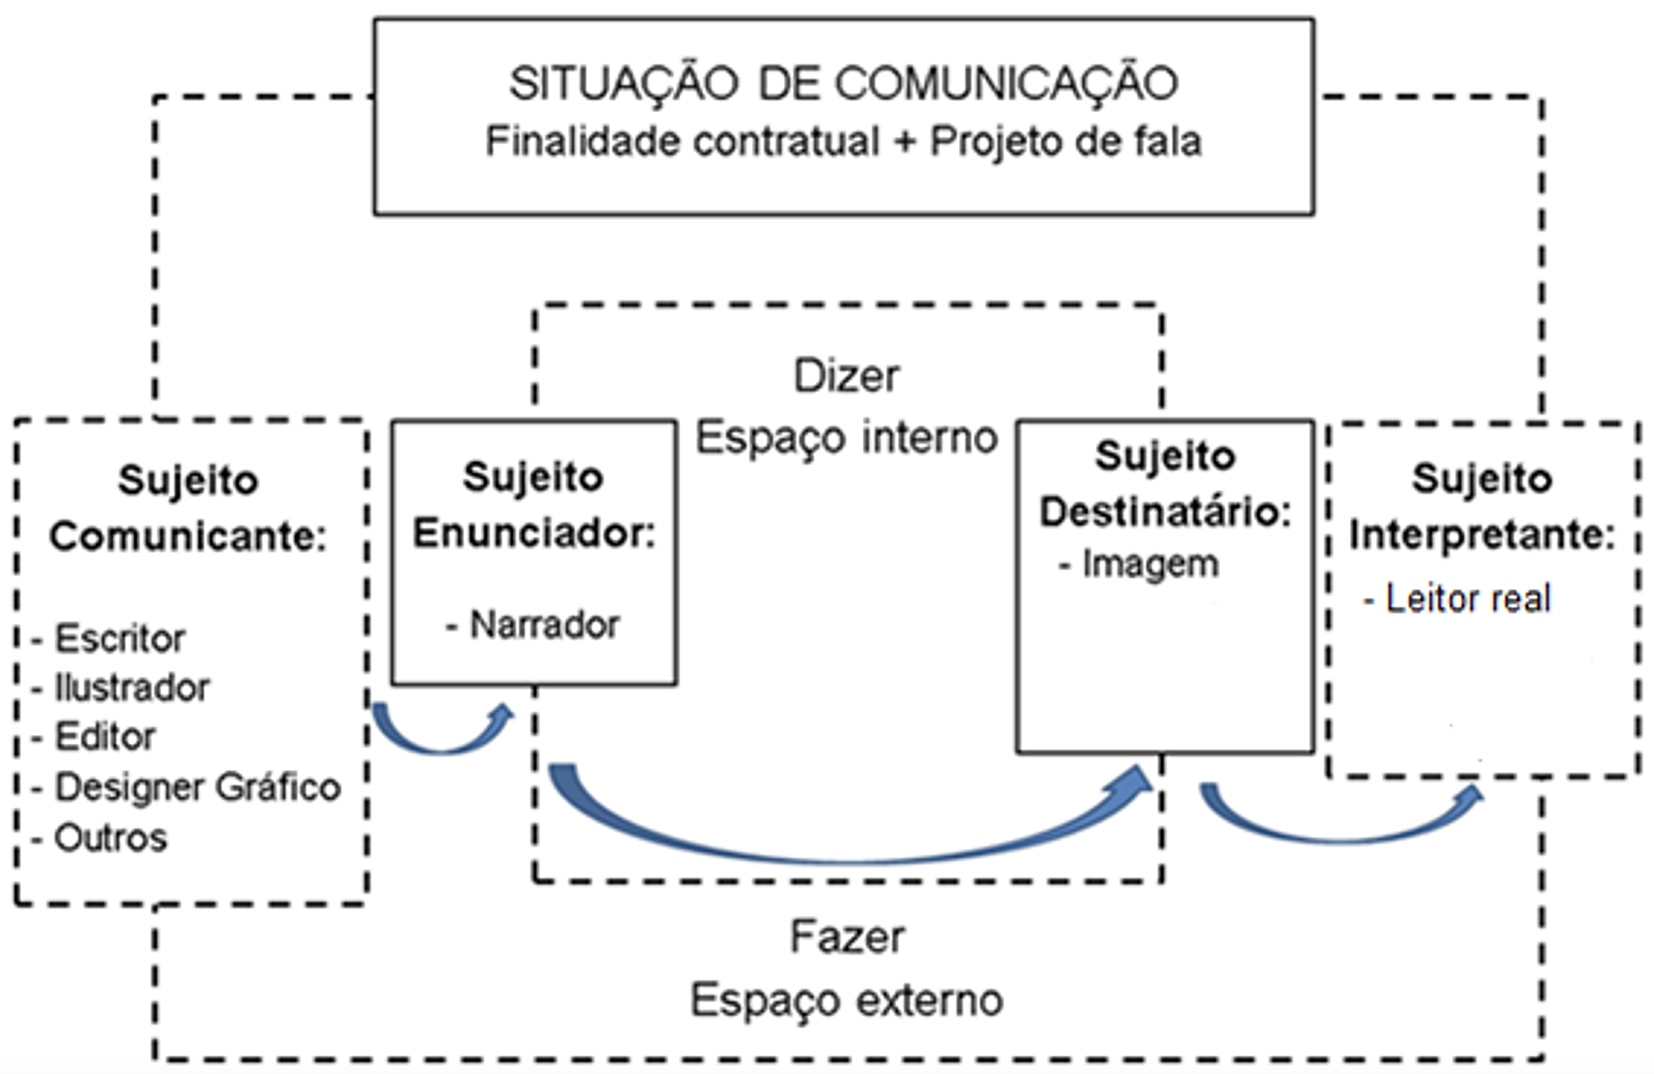 Dispositivo de encenação da linguagem no contrato de comunicação instaurado pelo livro infantil, adaptado de Charaudeau (2008, p.77)
